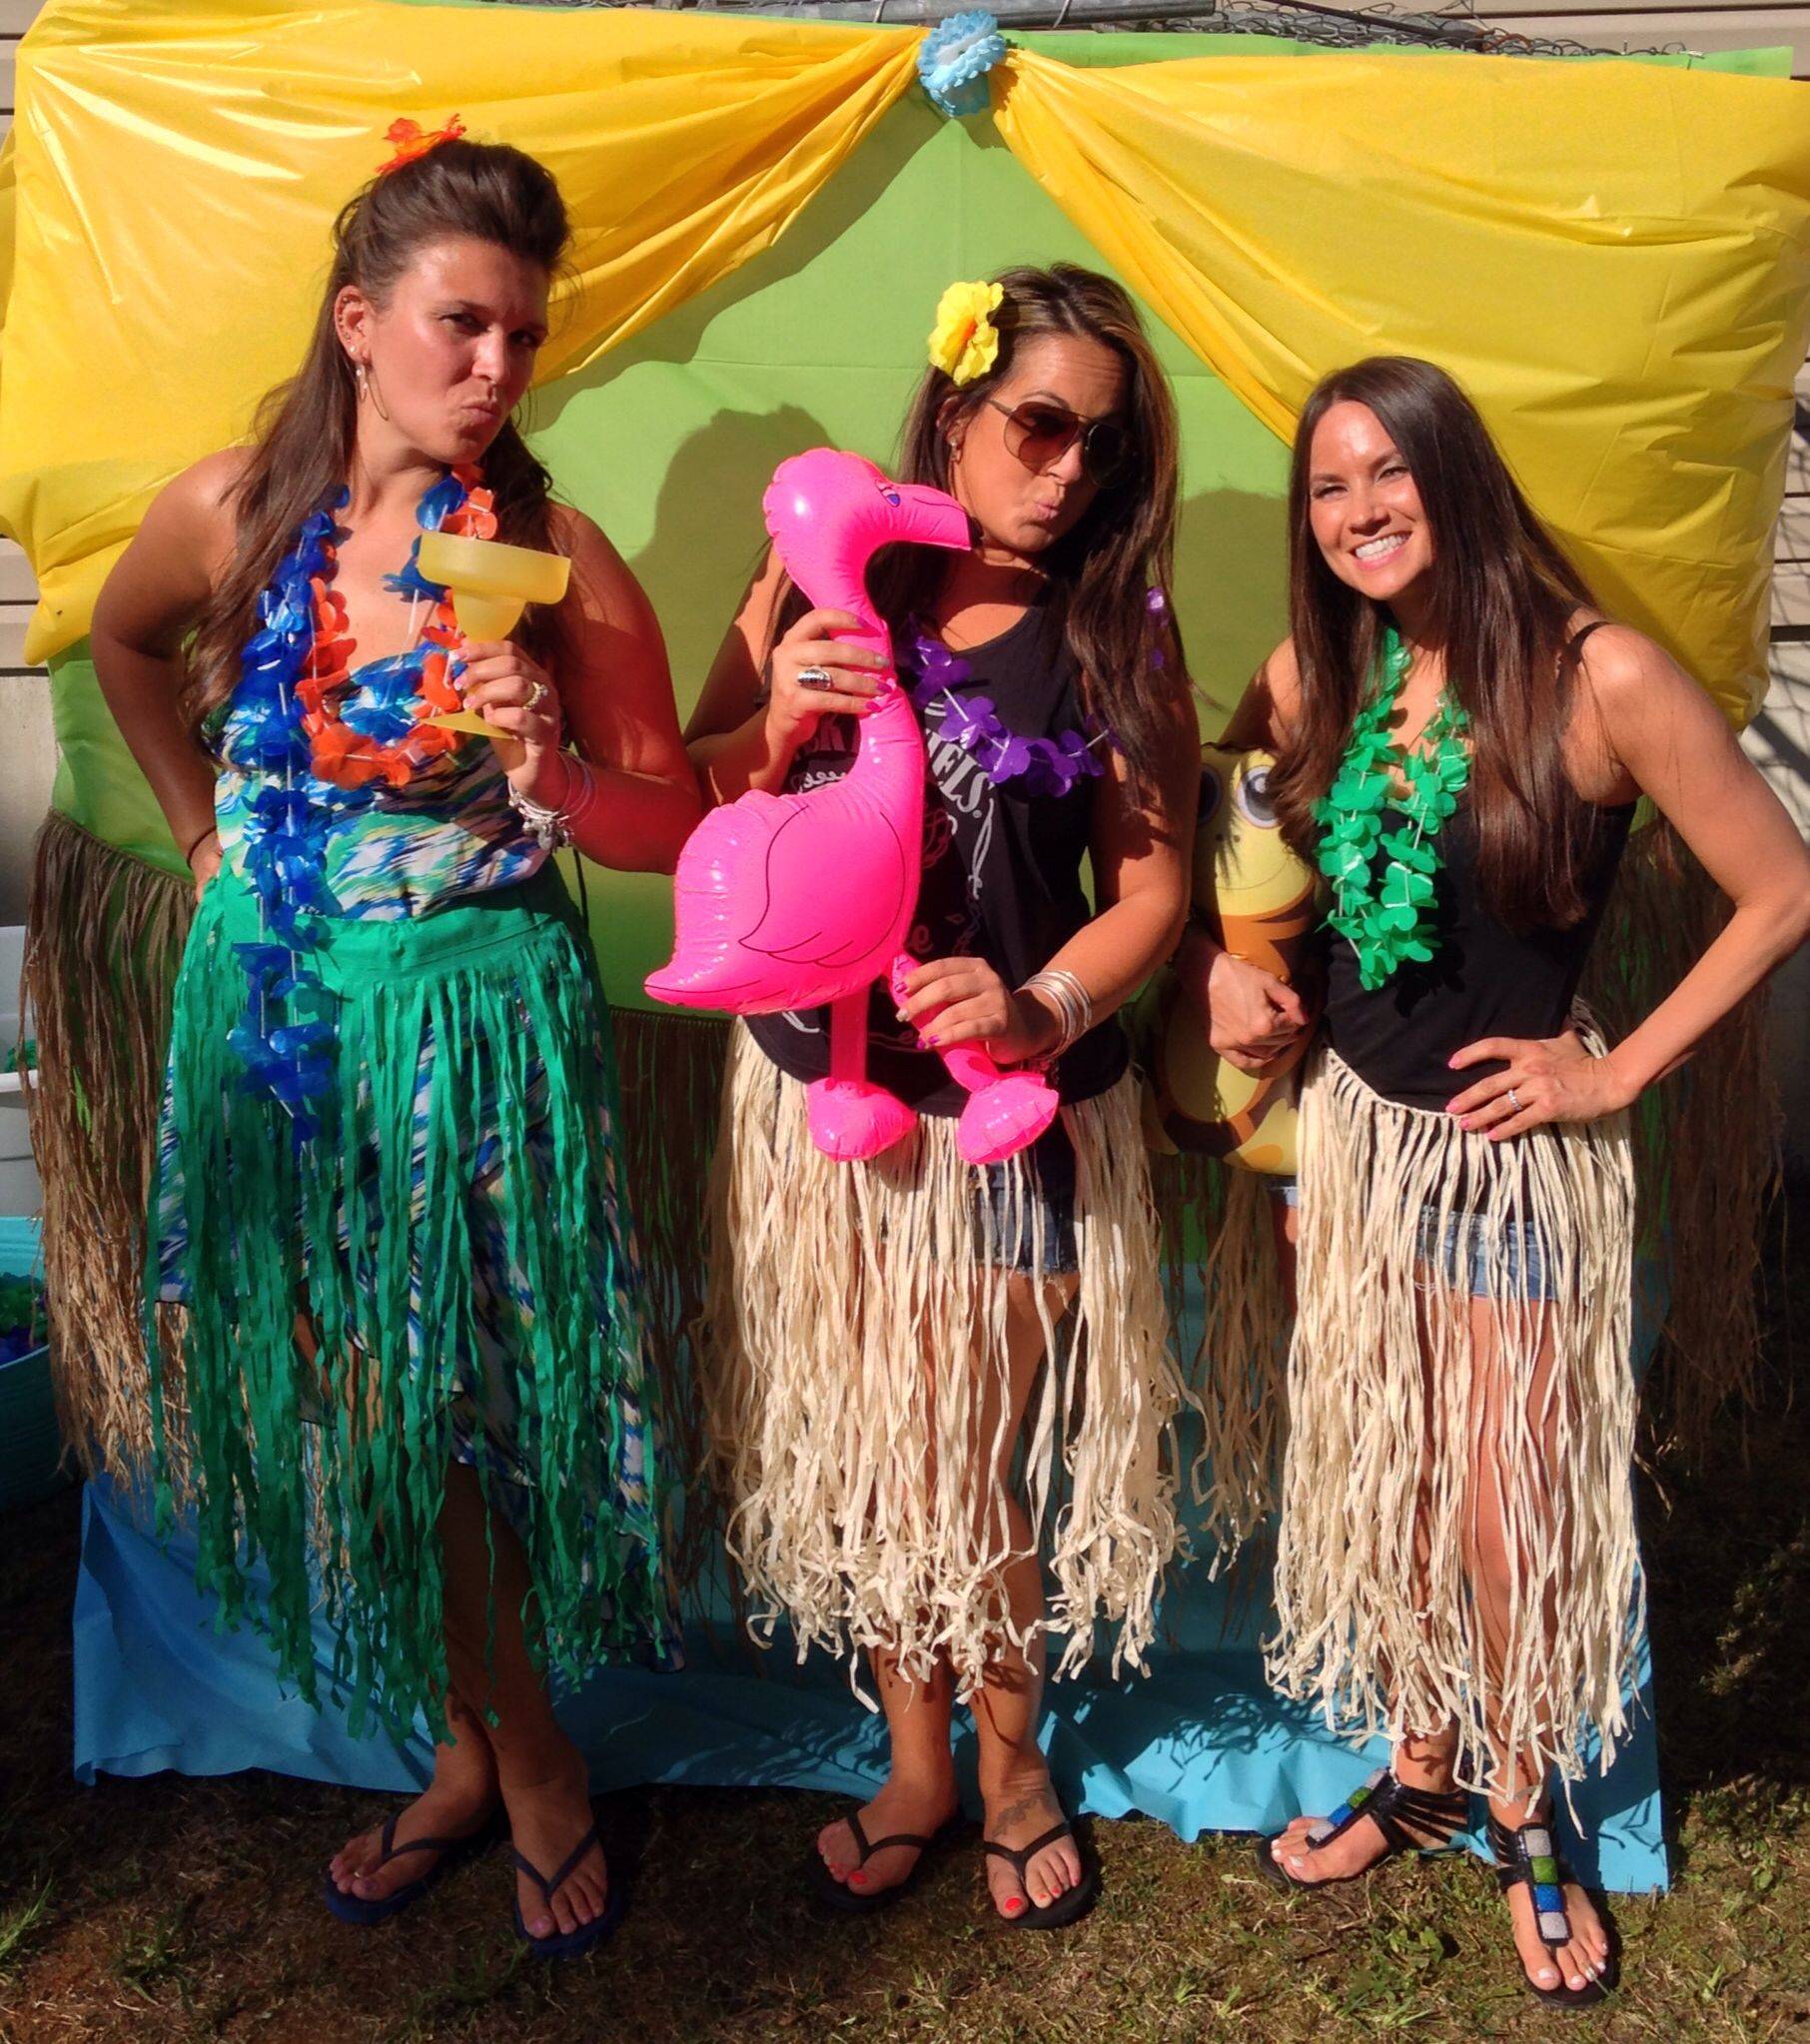 Гавайская вечеринка на день рождения. гавайский стиль одежды. взрослый сценарий гавайской вечеринки на день рождения, конкурсы. гавайский костюм своими руками